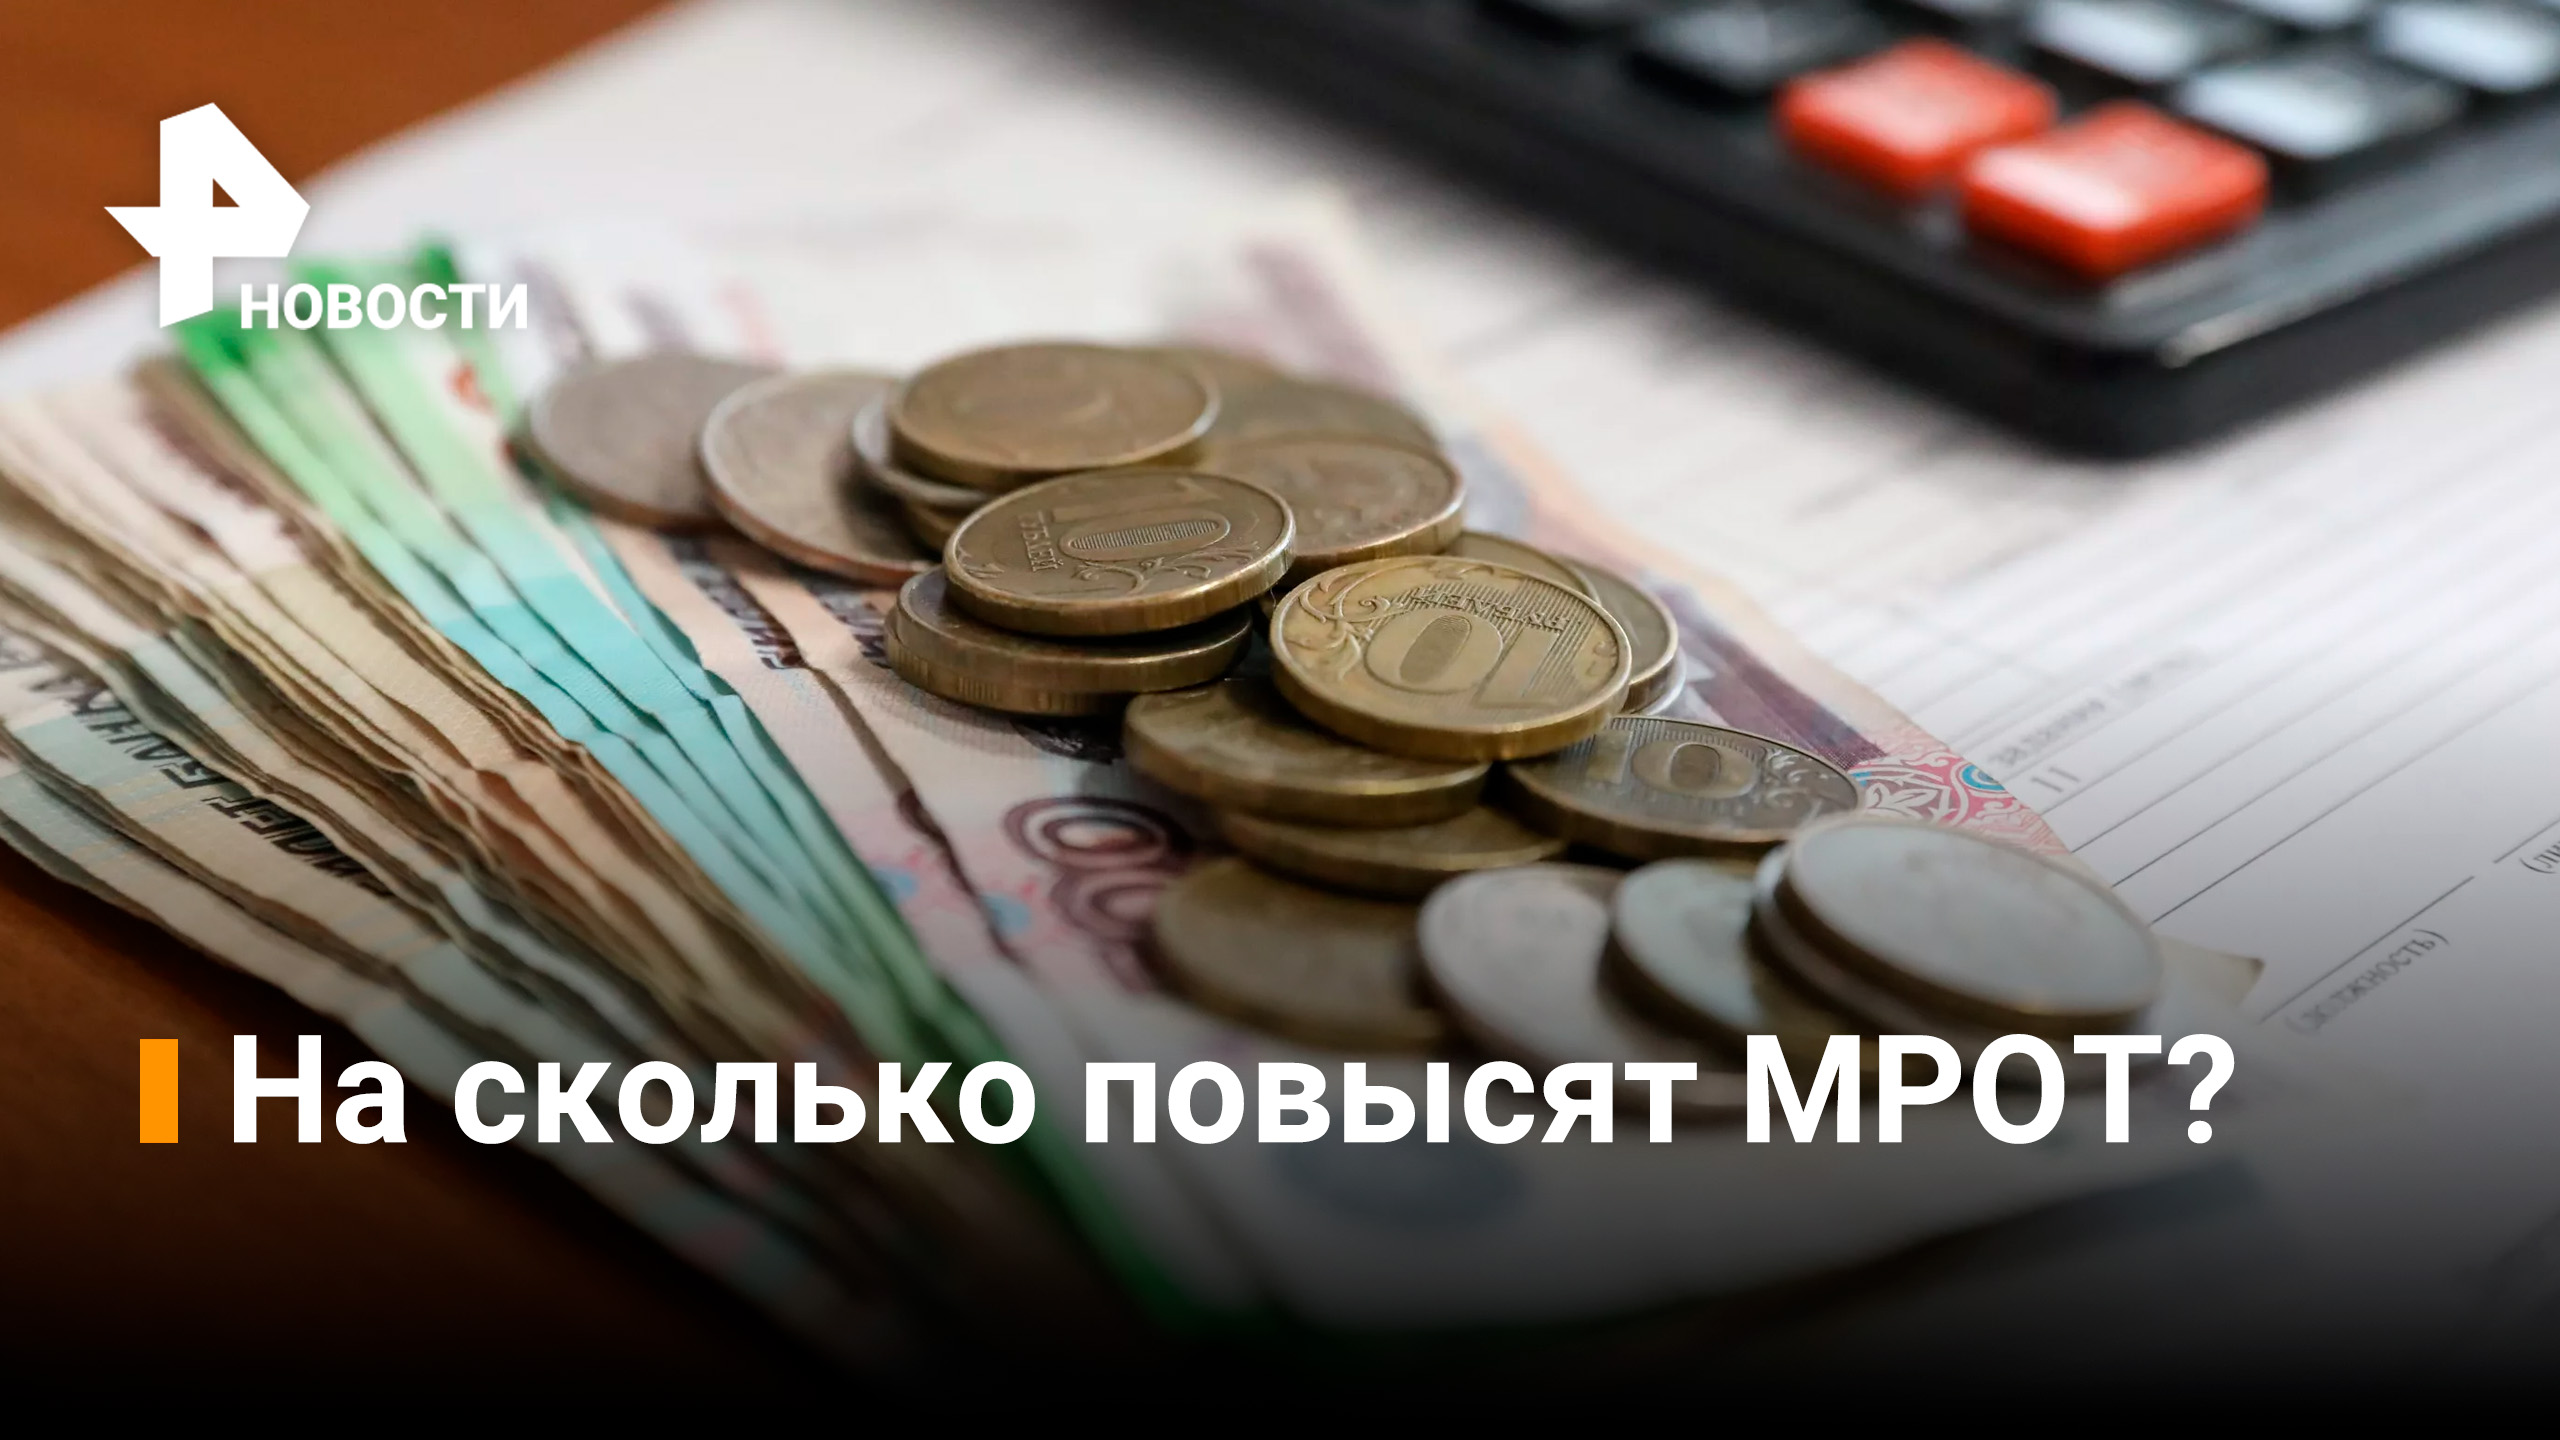 МРОТ и прожиточный минимум планируют повысить / Новости РЕН